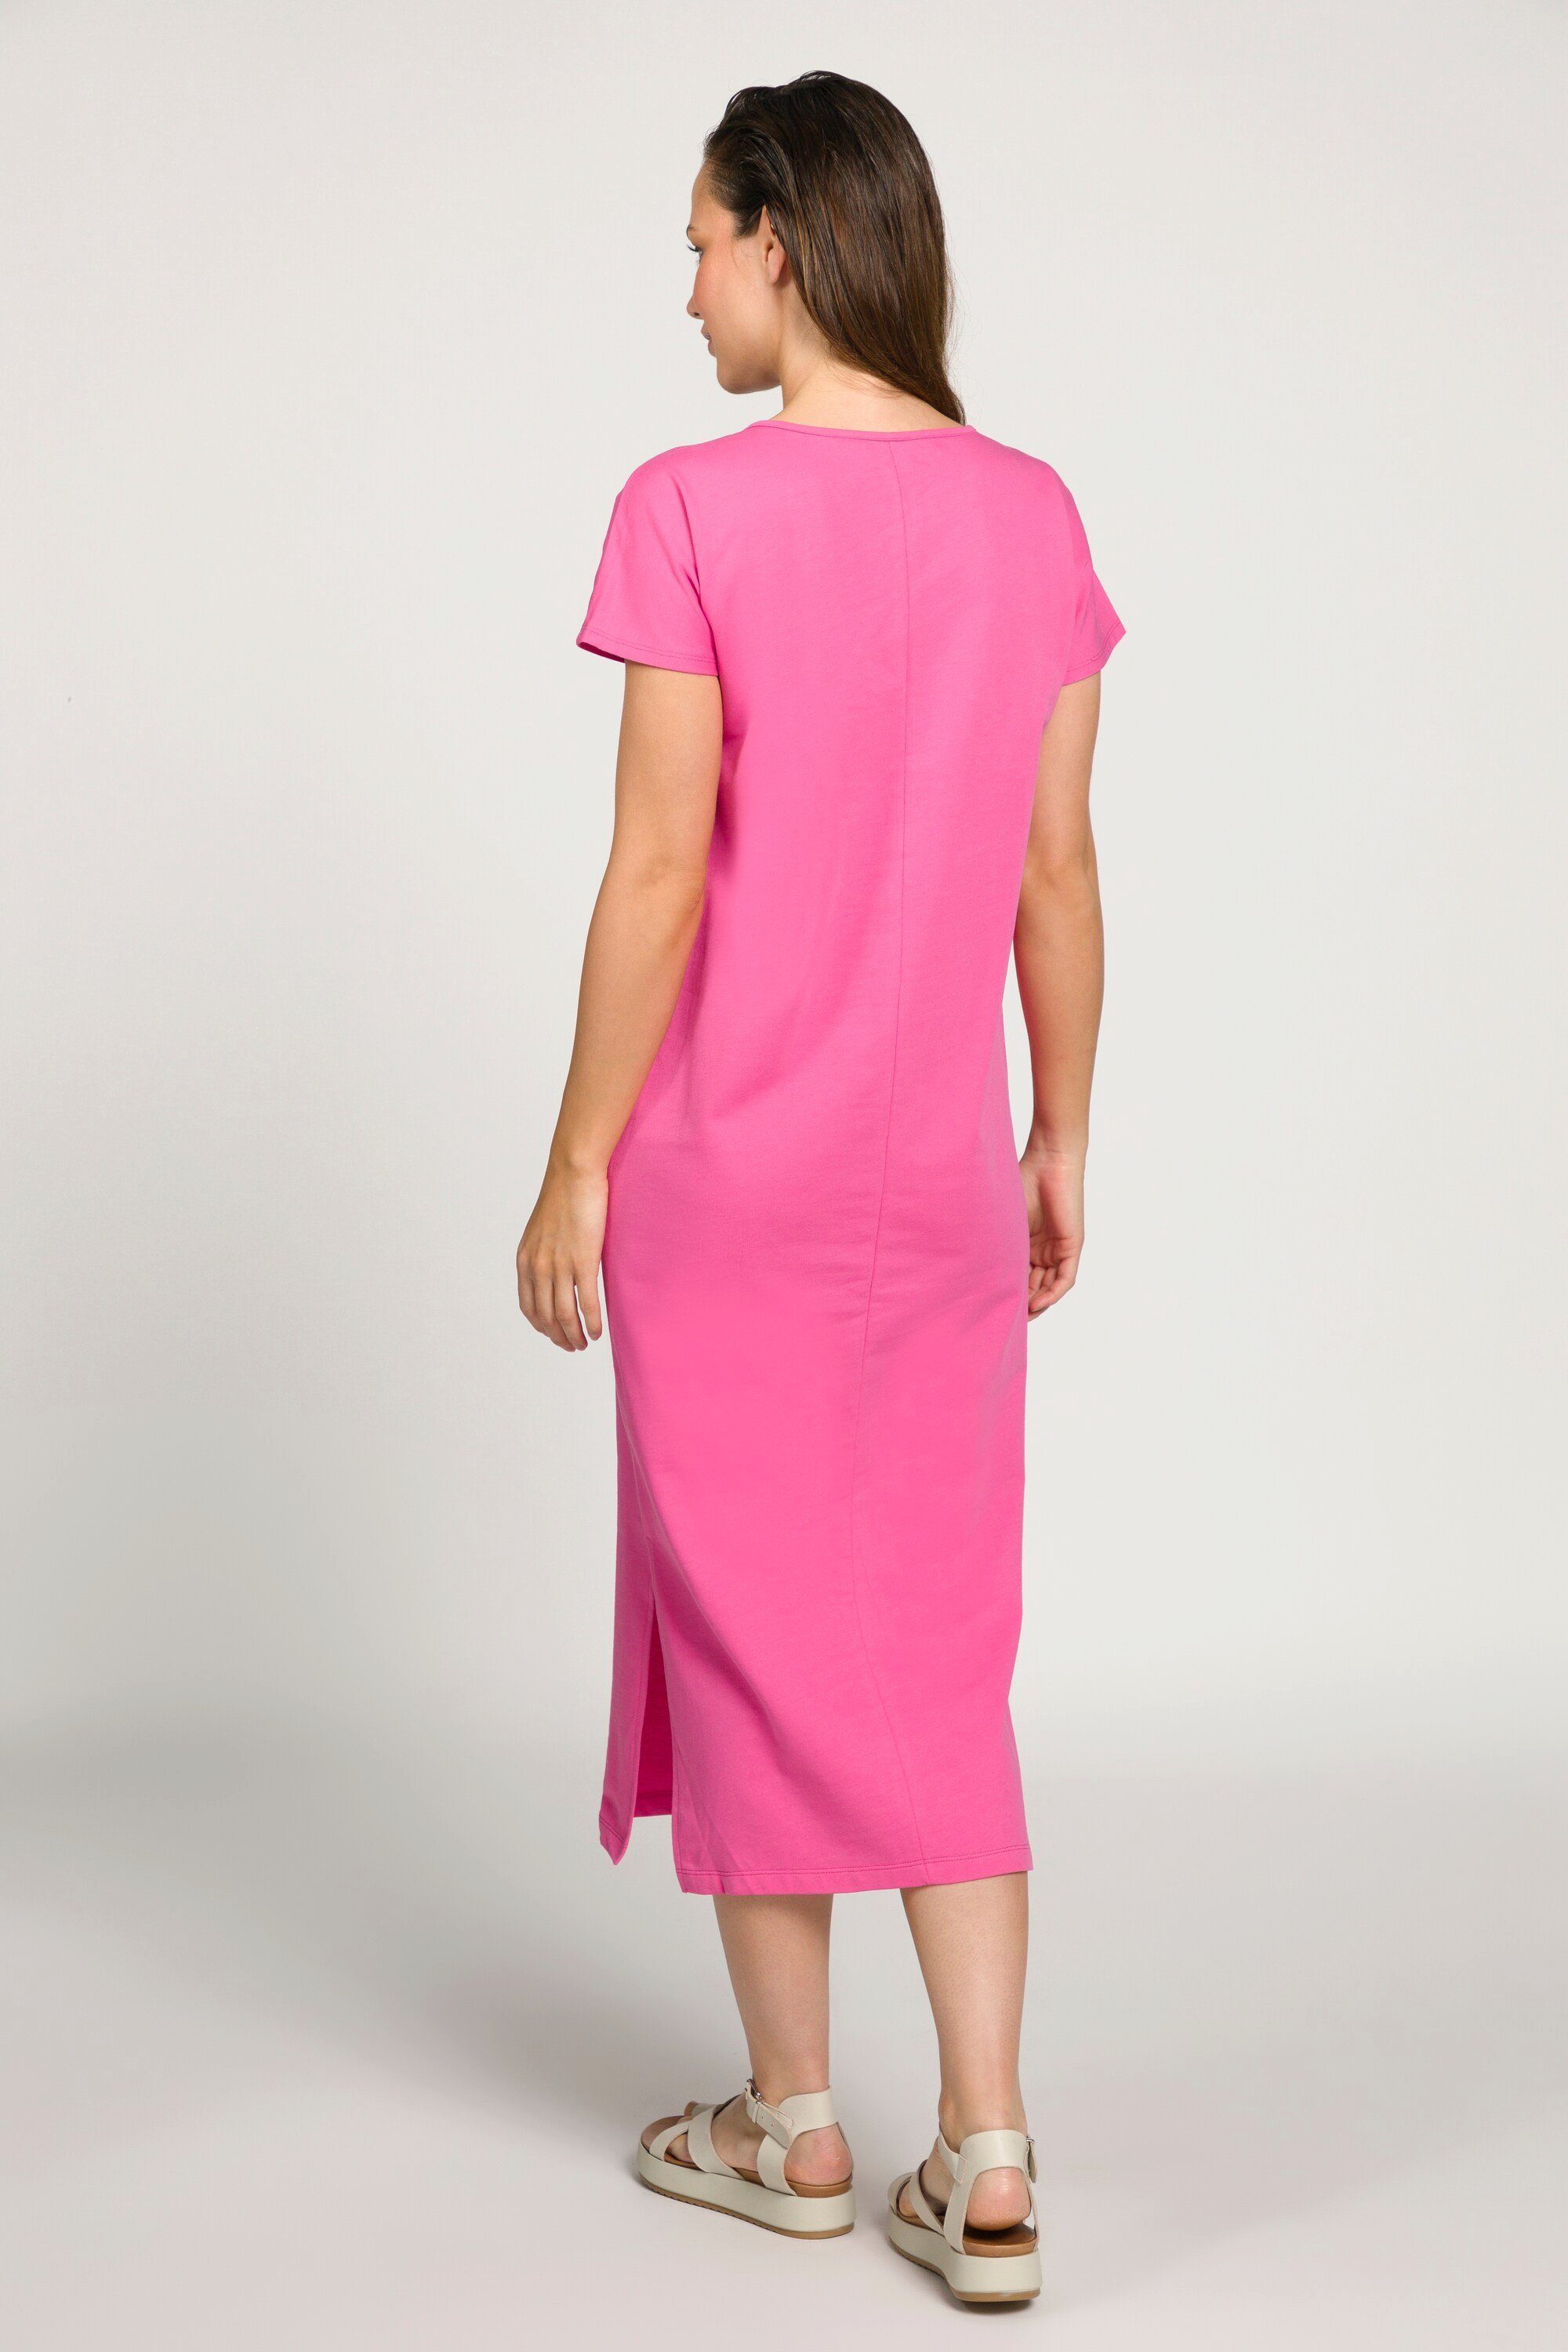 Kleid Laura Jerseykleid pink Rundhals Jersey Gina ärmellos Seitenschlitze